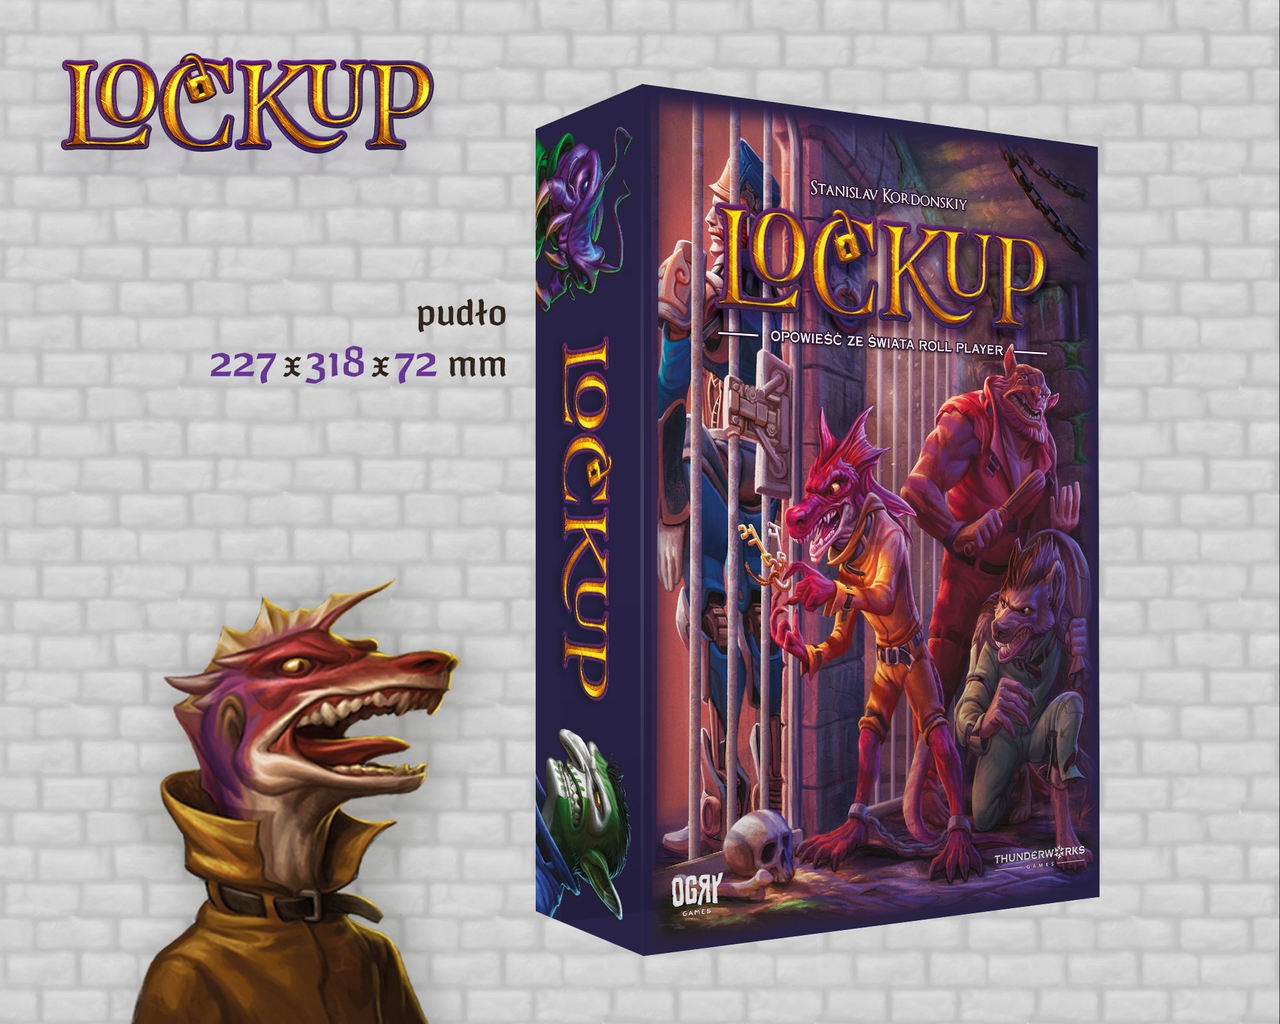 Lockup: Opowieść ze świata Roll Player + Kulbak